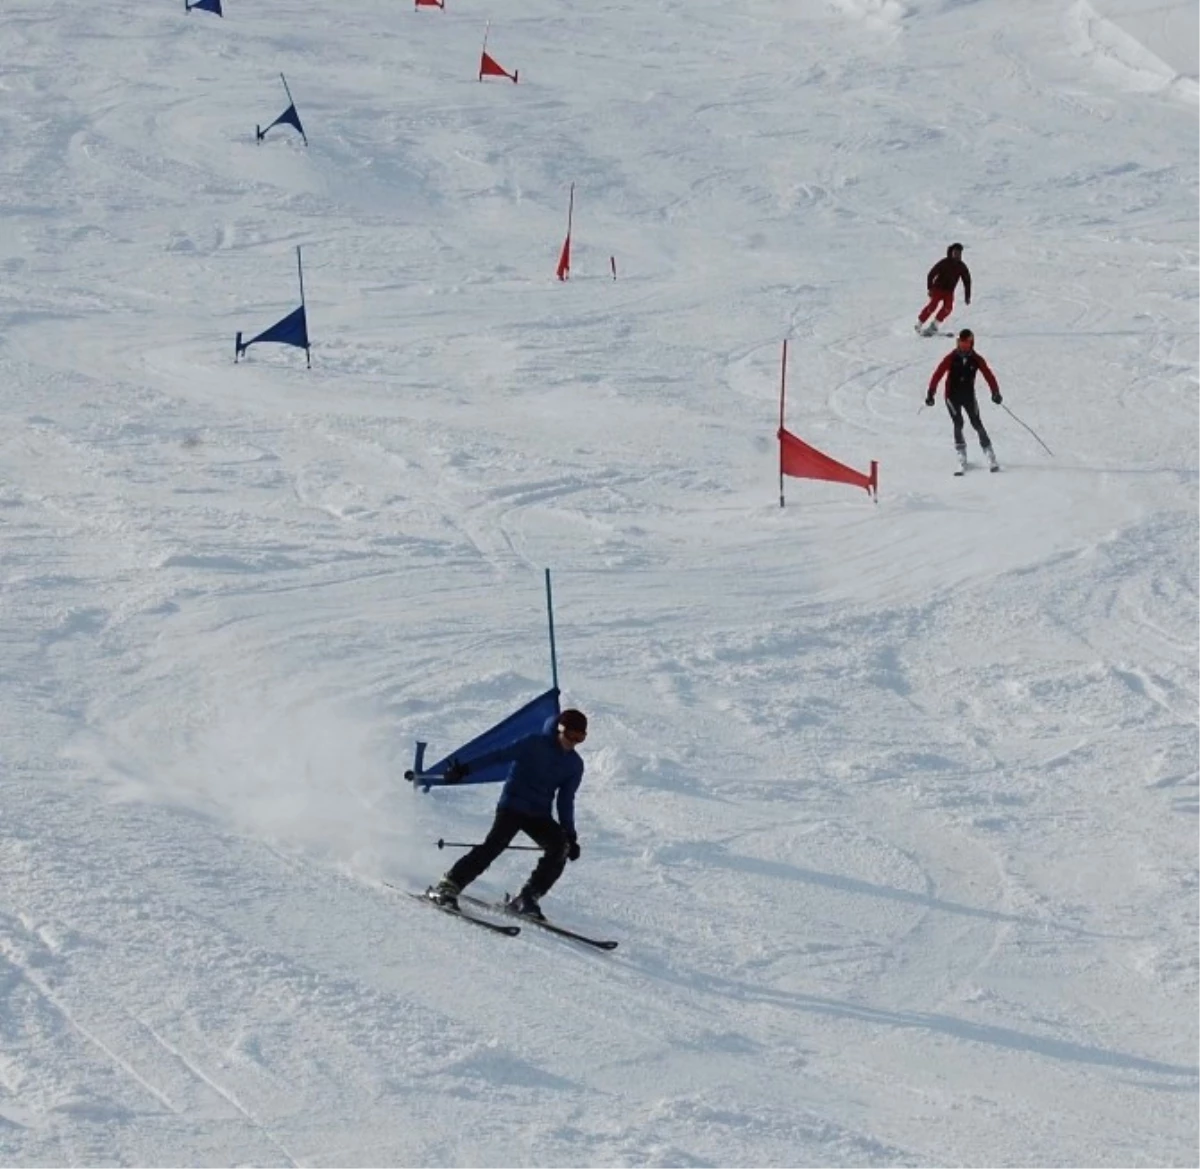 Ilgaz Kayak Tesislerinde "Kar Mutluluğu"